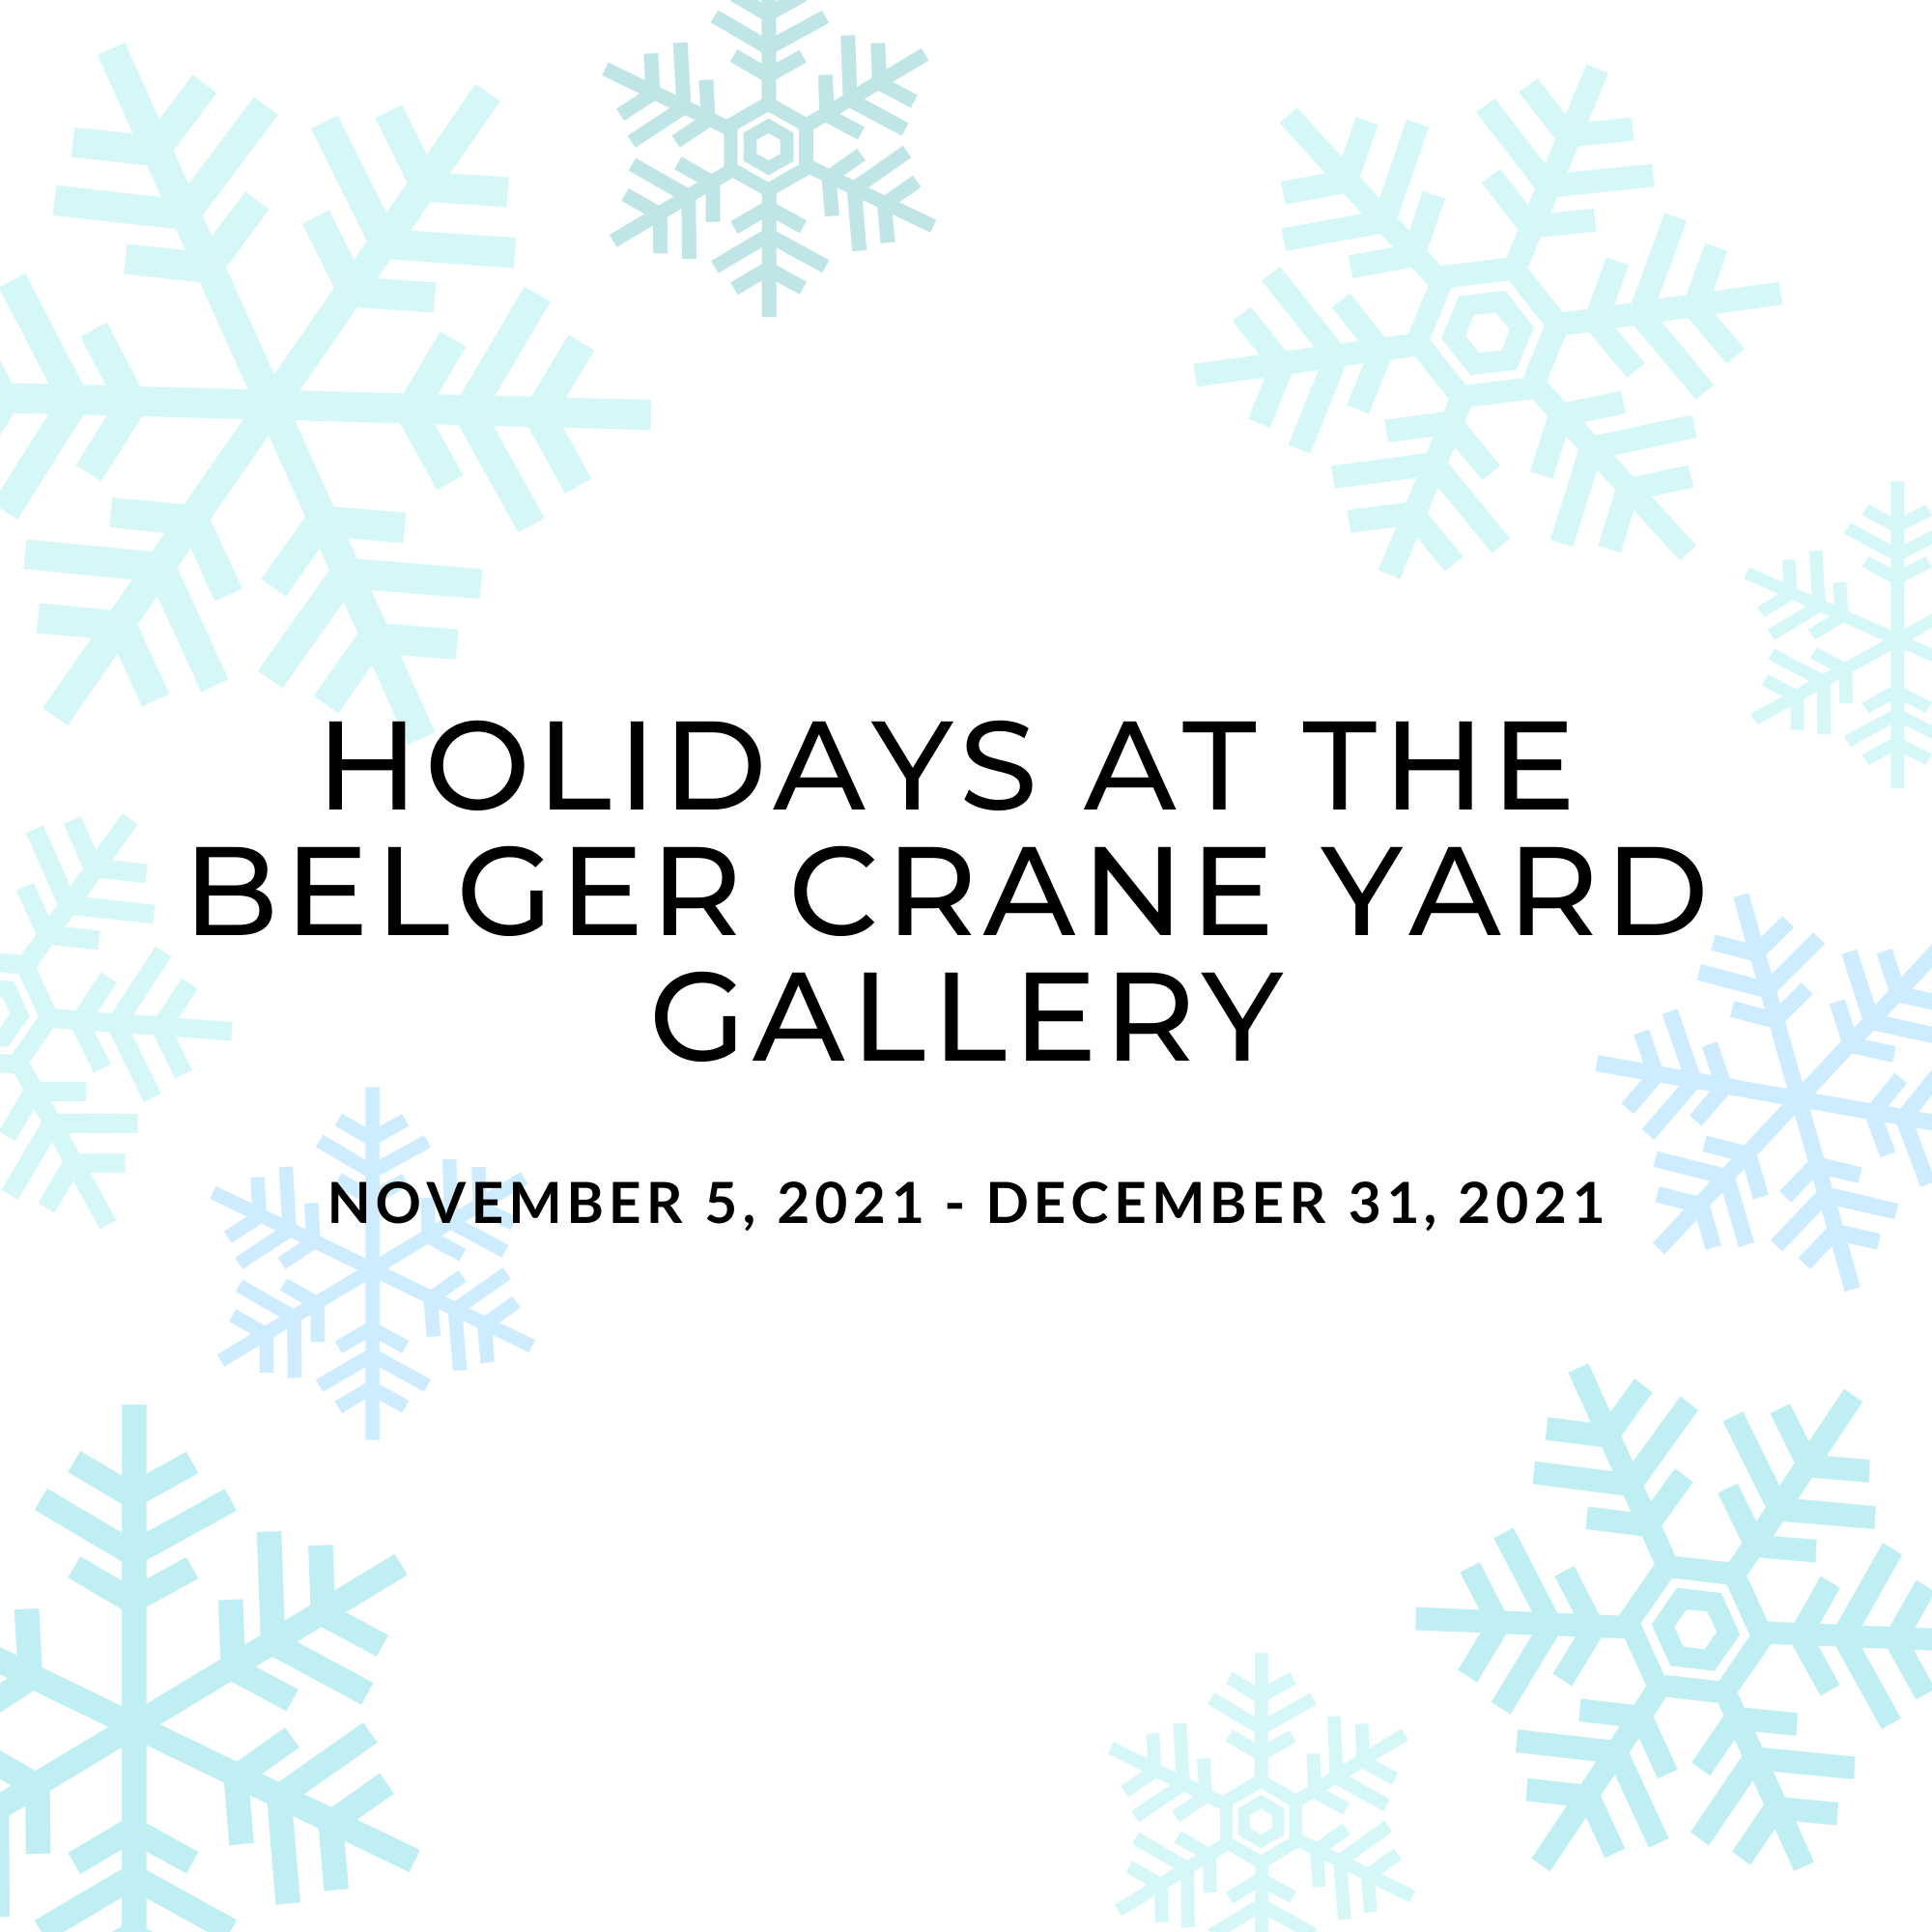 Holidays at the Belger Crane Yard Gallery 2021 - Thumbnail.png